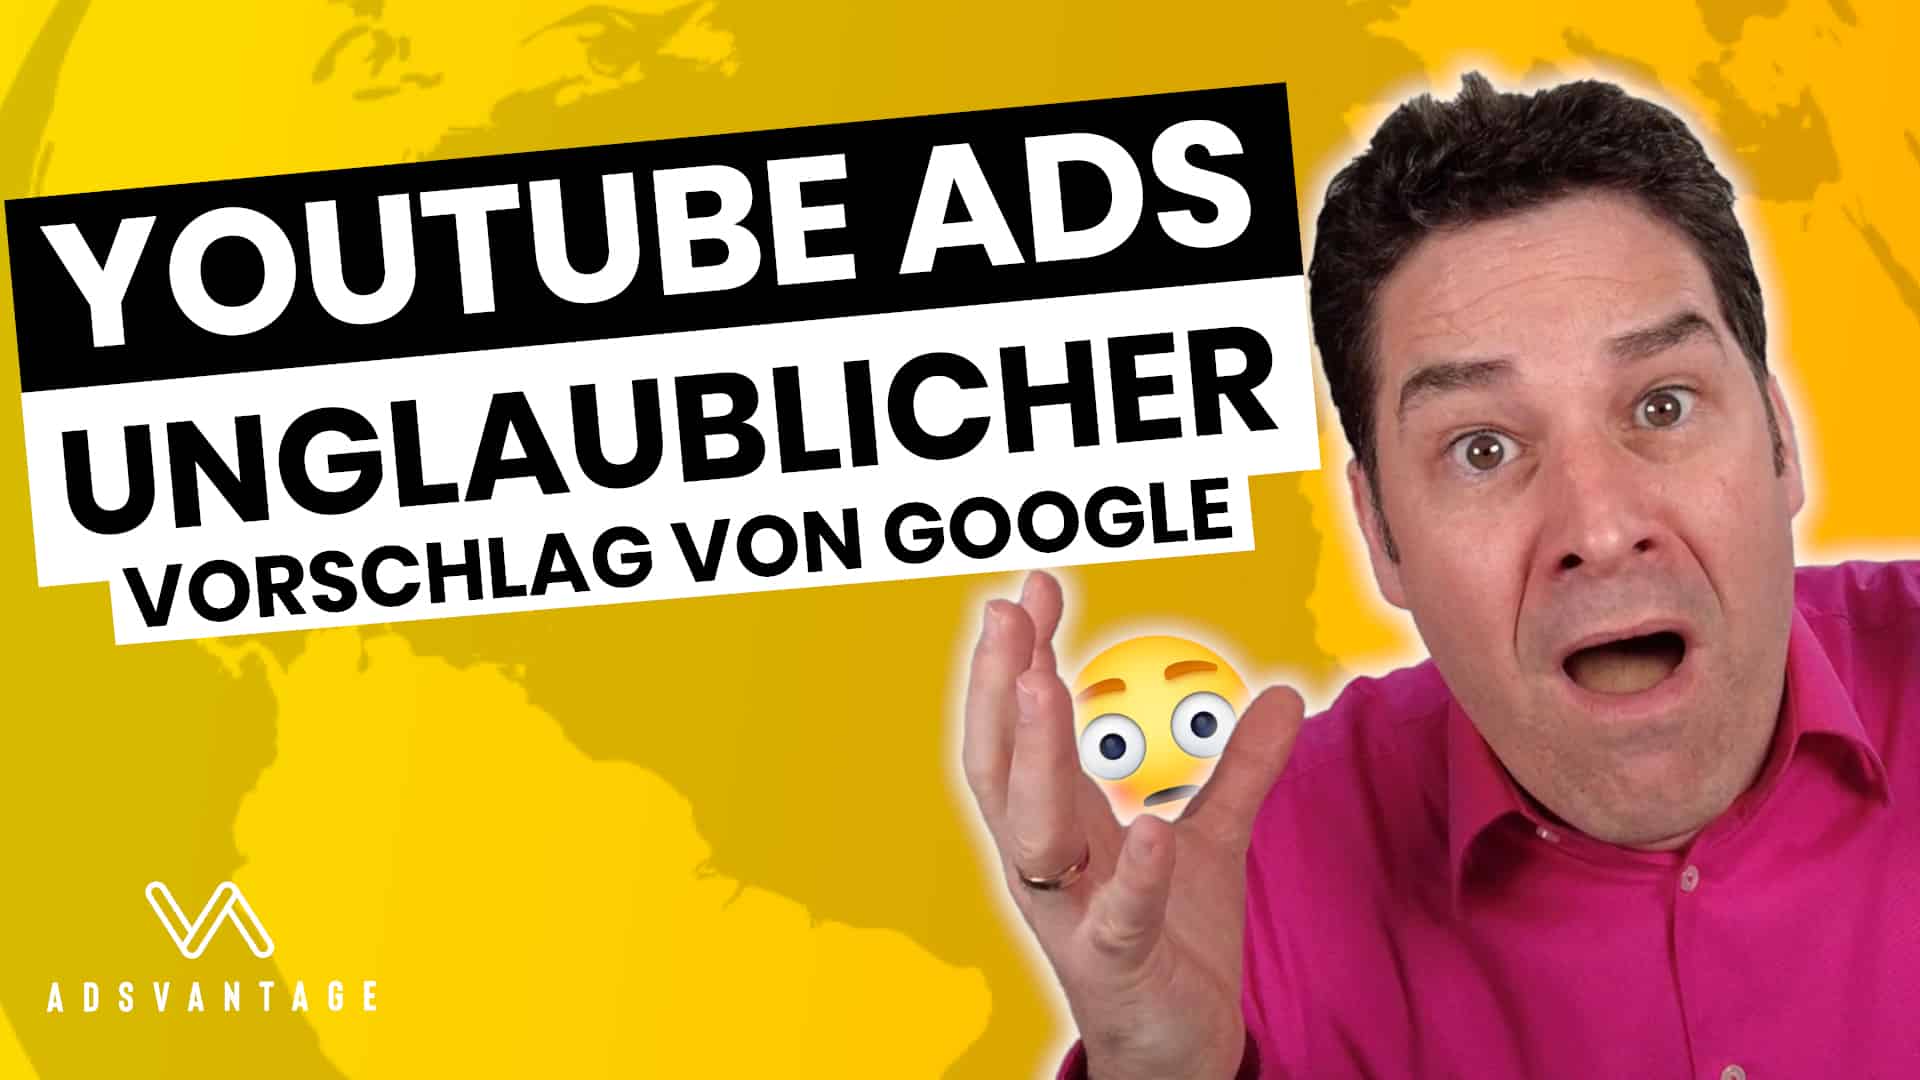 YouTube Ads skalieren: Unglaublicher Vorschlag von Google 😳